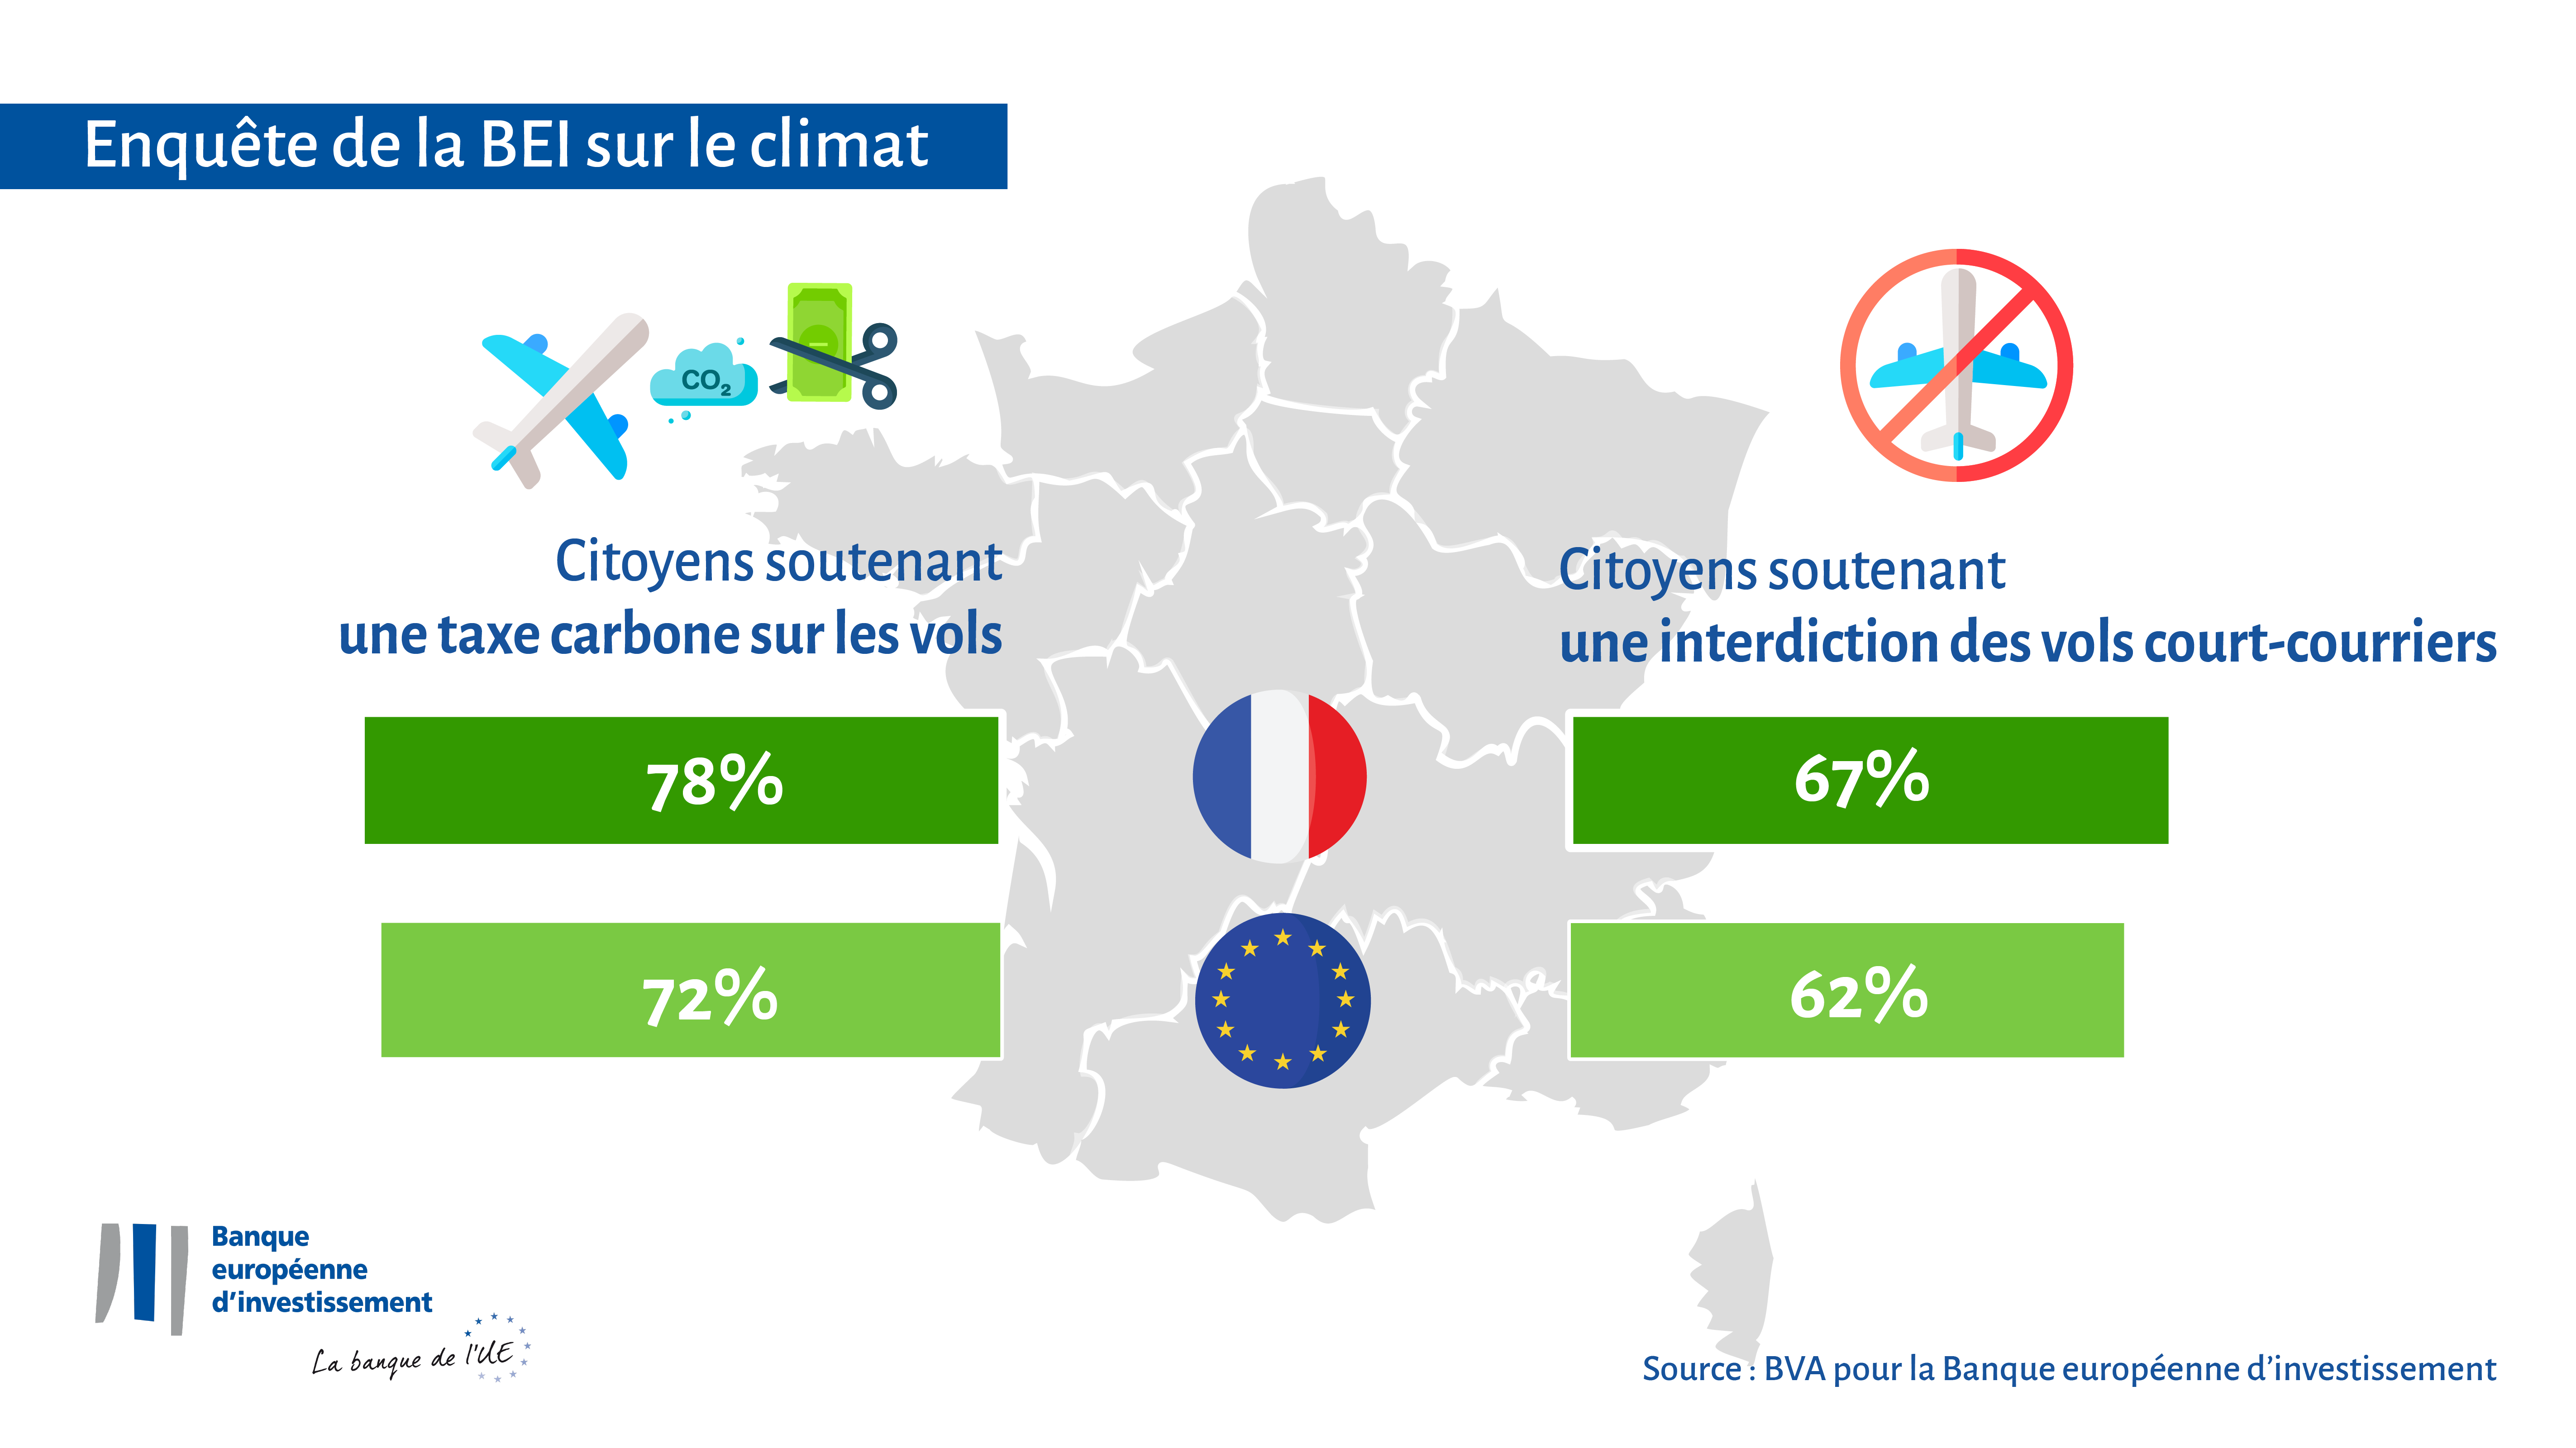 Les Français sont favorables à la taxation des vols de passagers pour lutter contre le changement climatique : 78 % affirment être favorables à une taxe carbone sur les vols